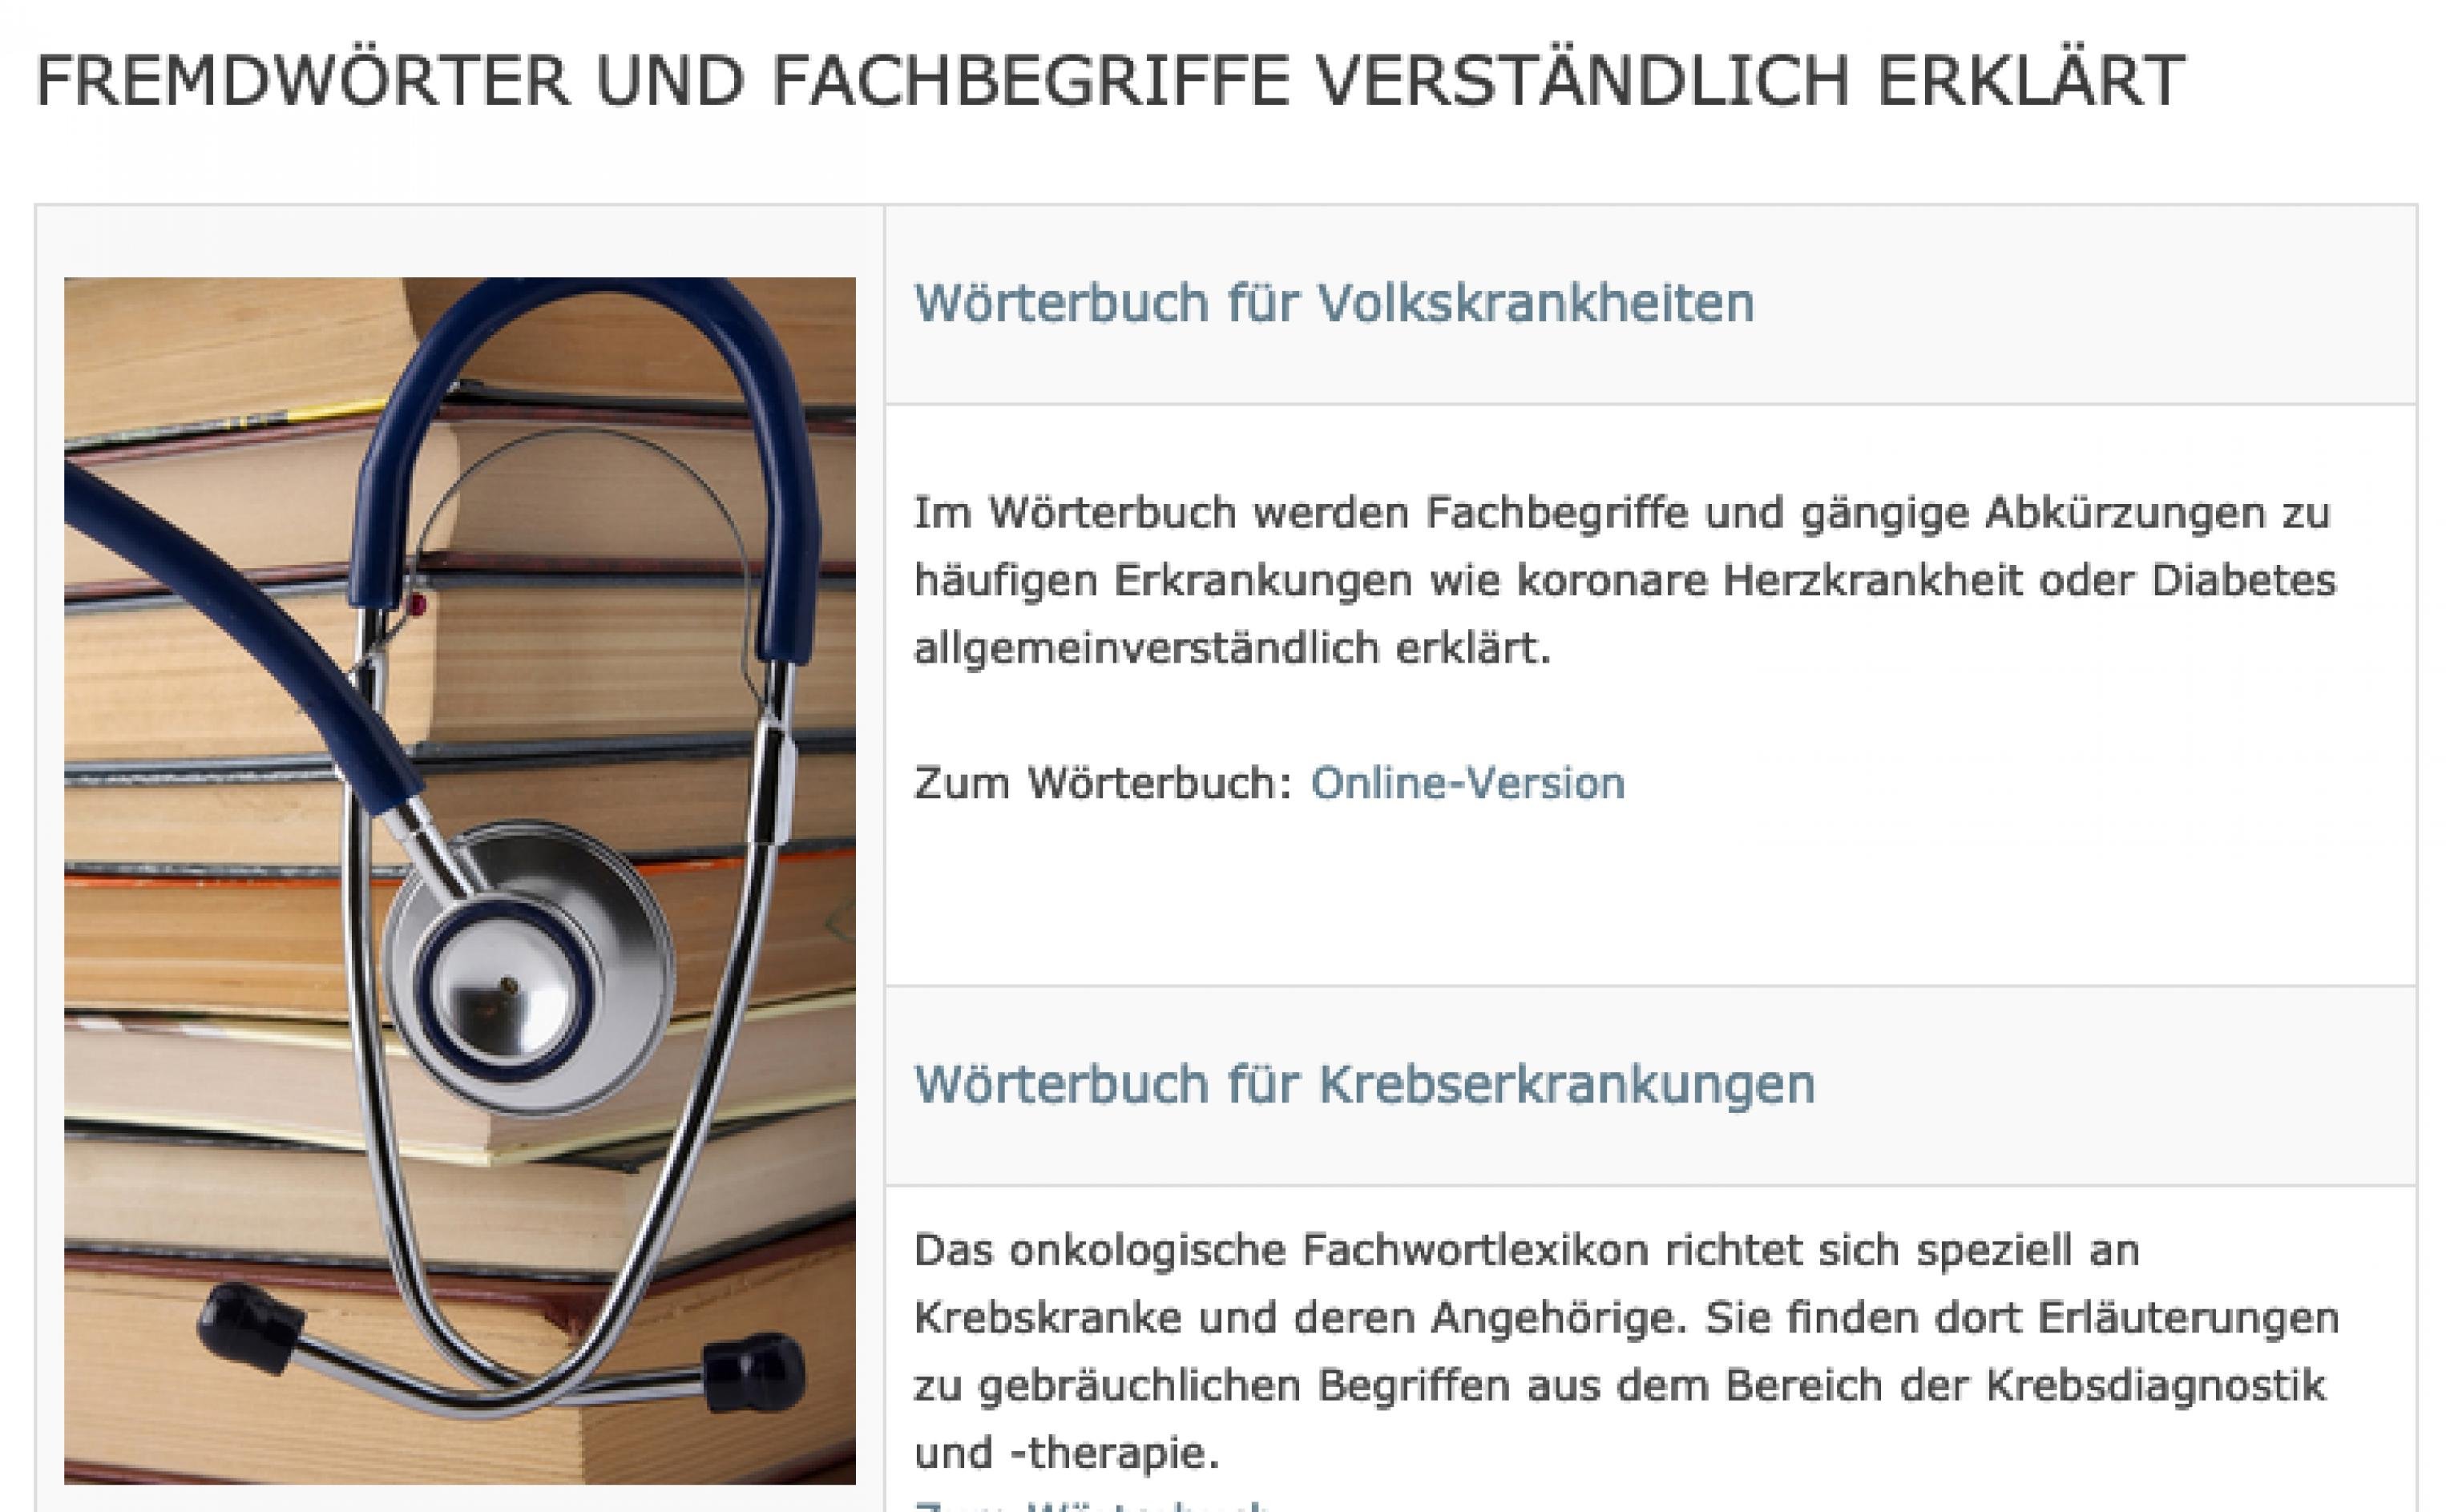 Screenshot der Website www.patienten-information.de. Zu sehen ist der Startbildschirm des Bereichs „Wörterbücher“: für Volkskrankheiten und Krebserkrankungen